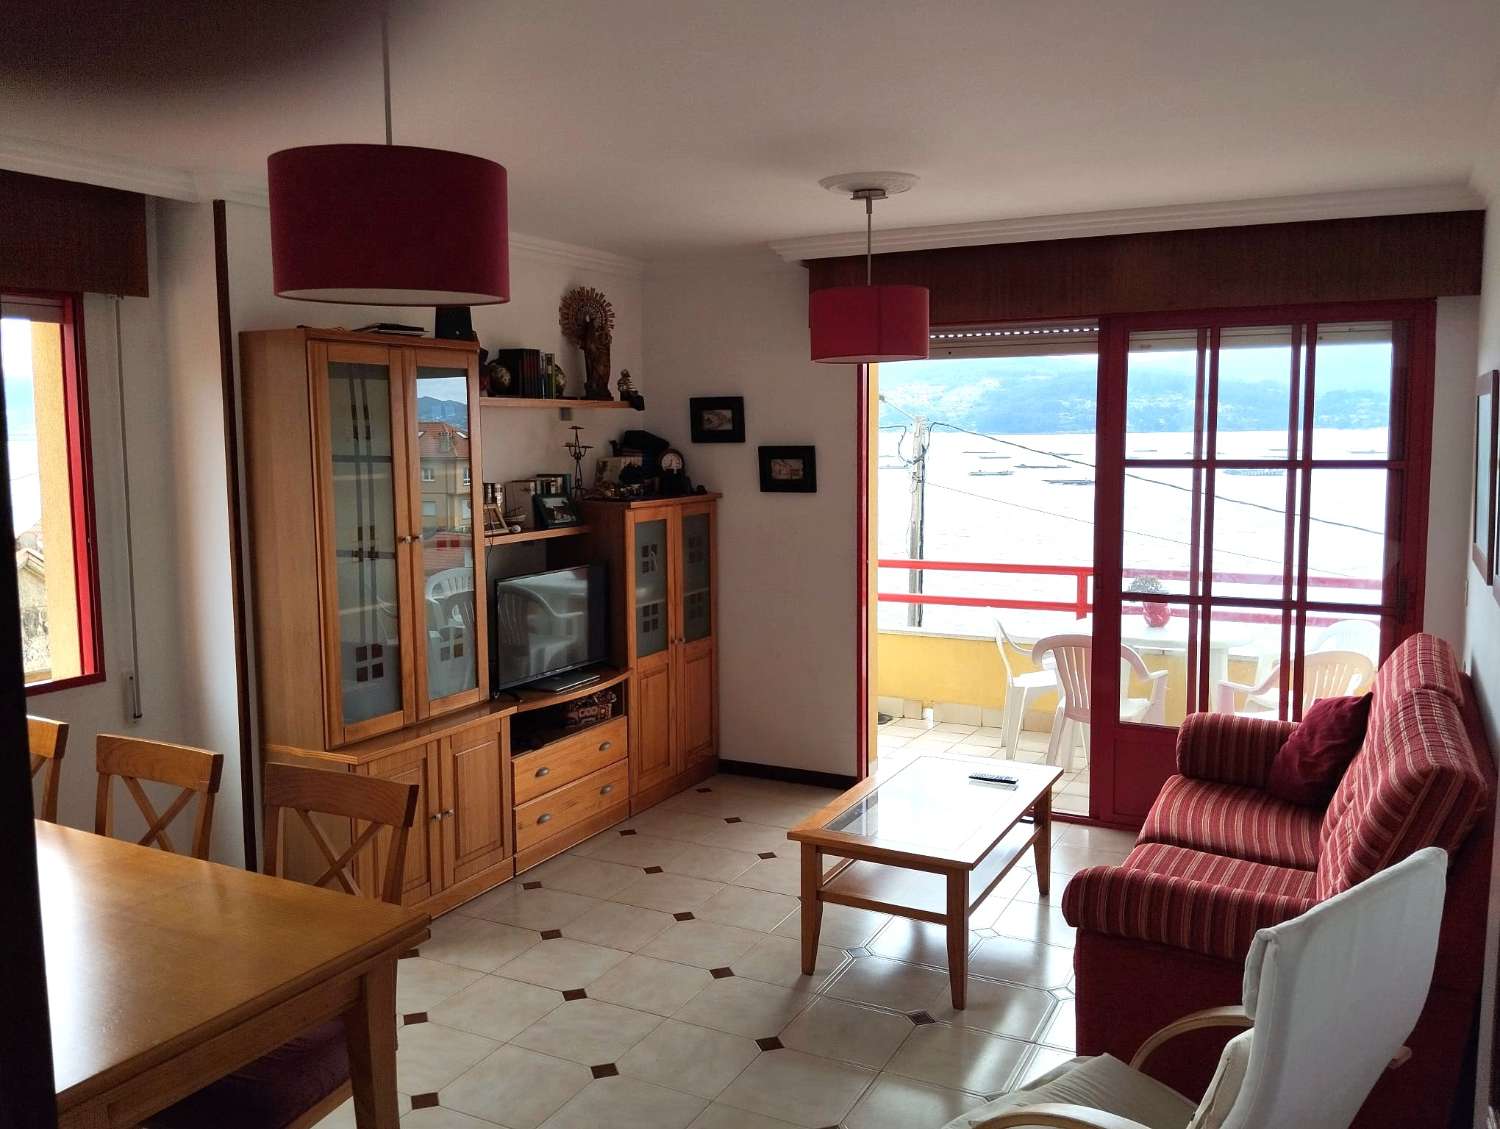 Раксо: A7099: Пойо... Великолепный дом с видом на море... с видом на Риа-де-Понтеведра...